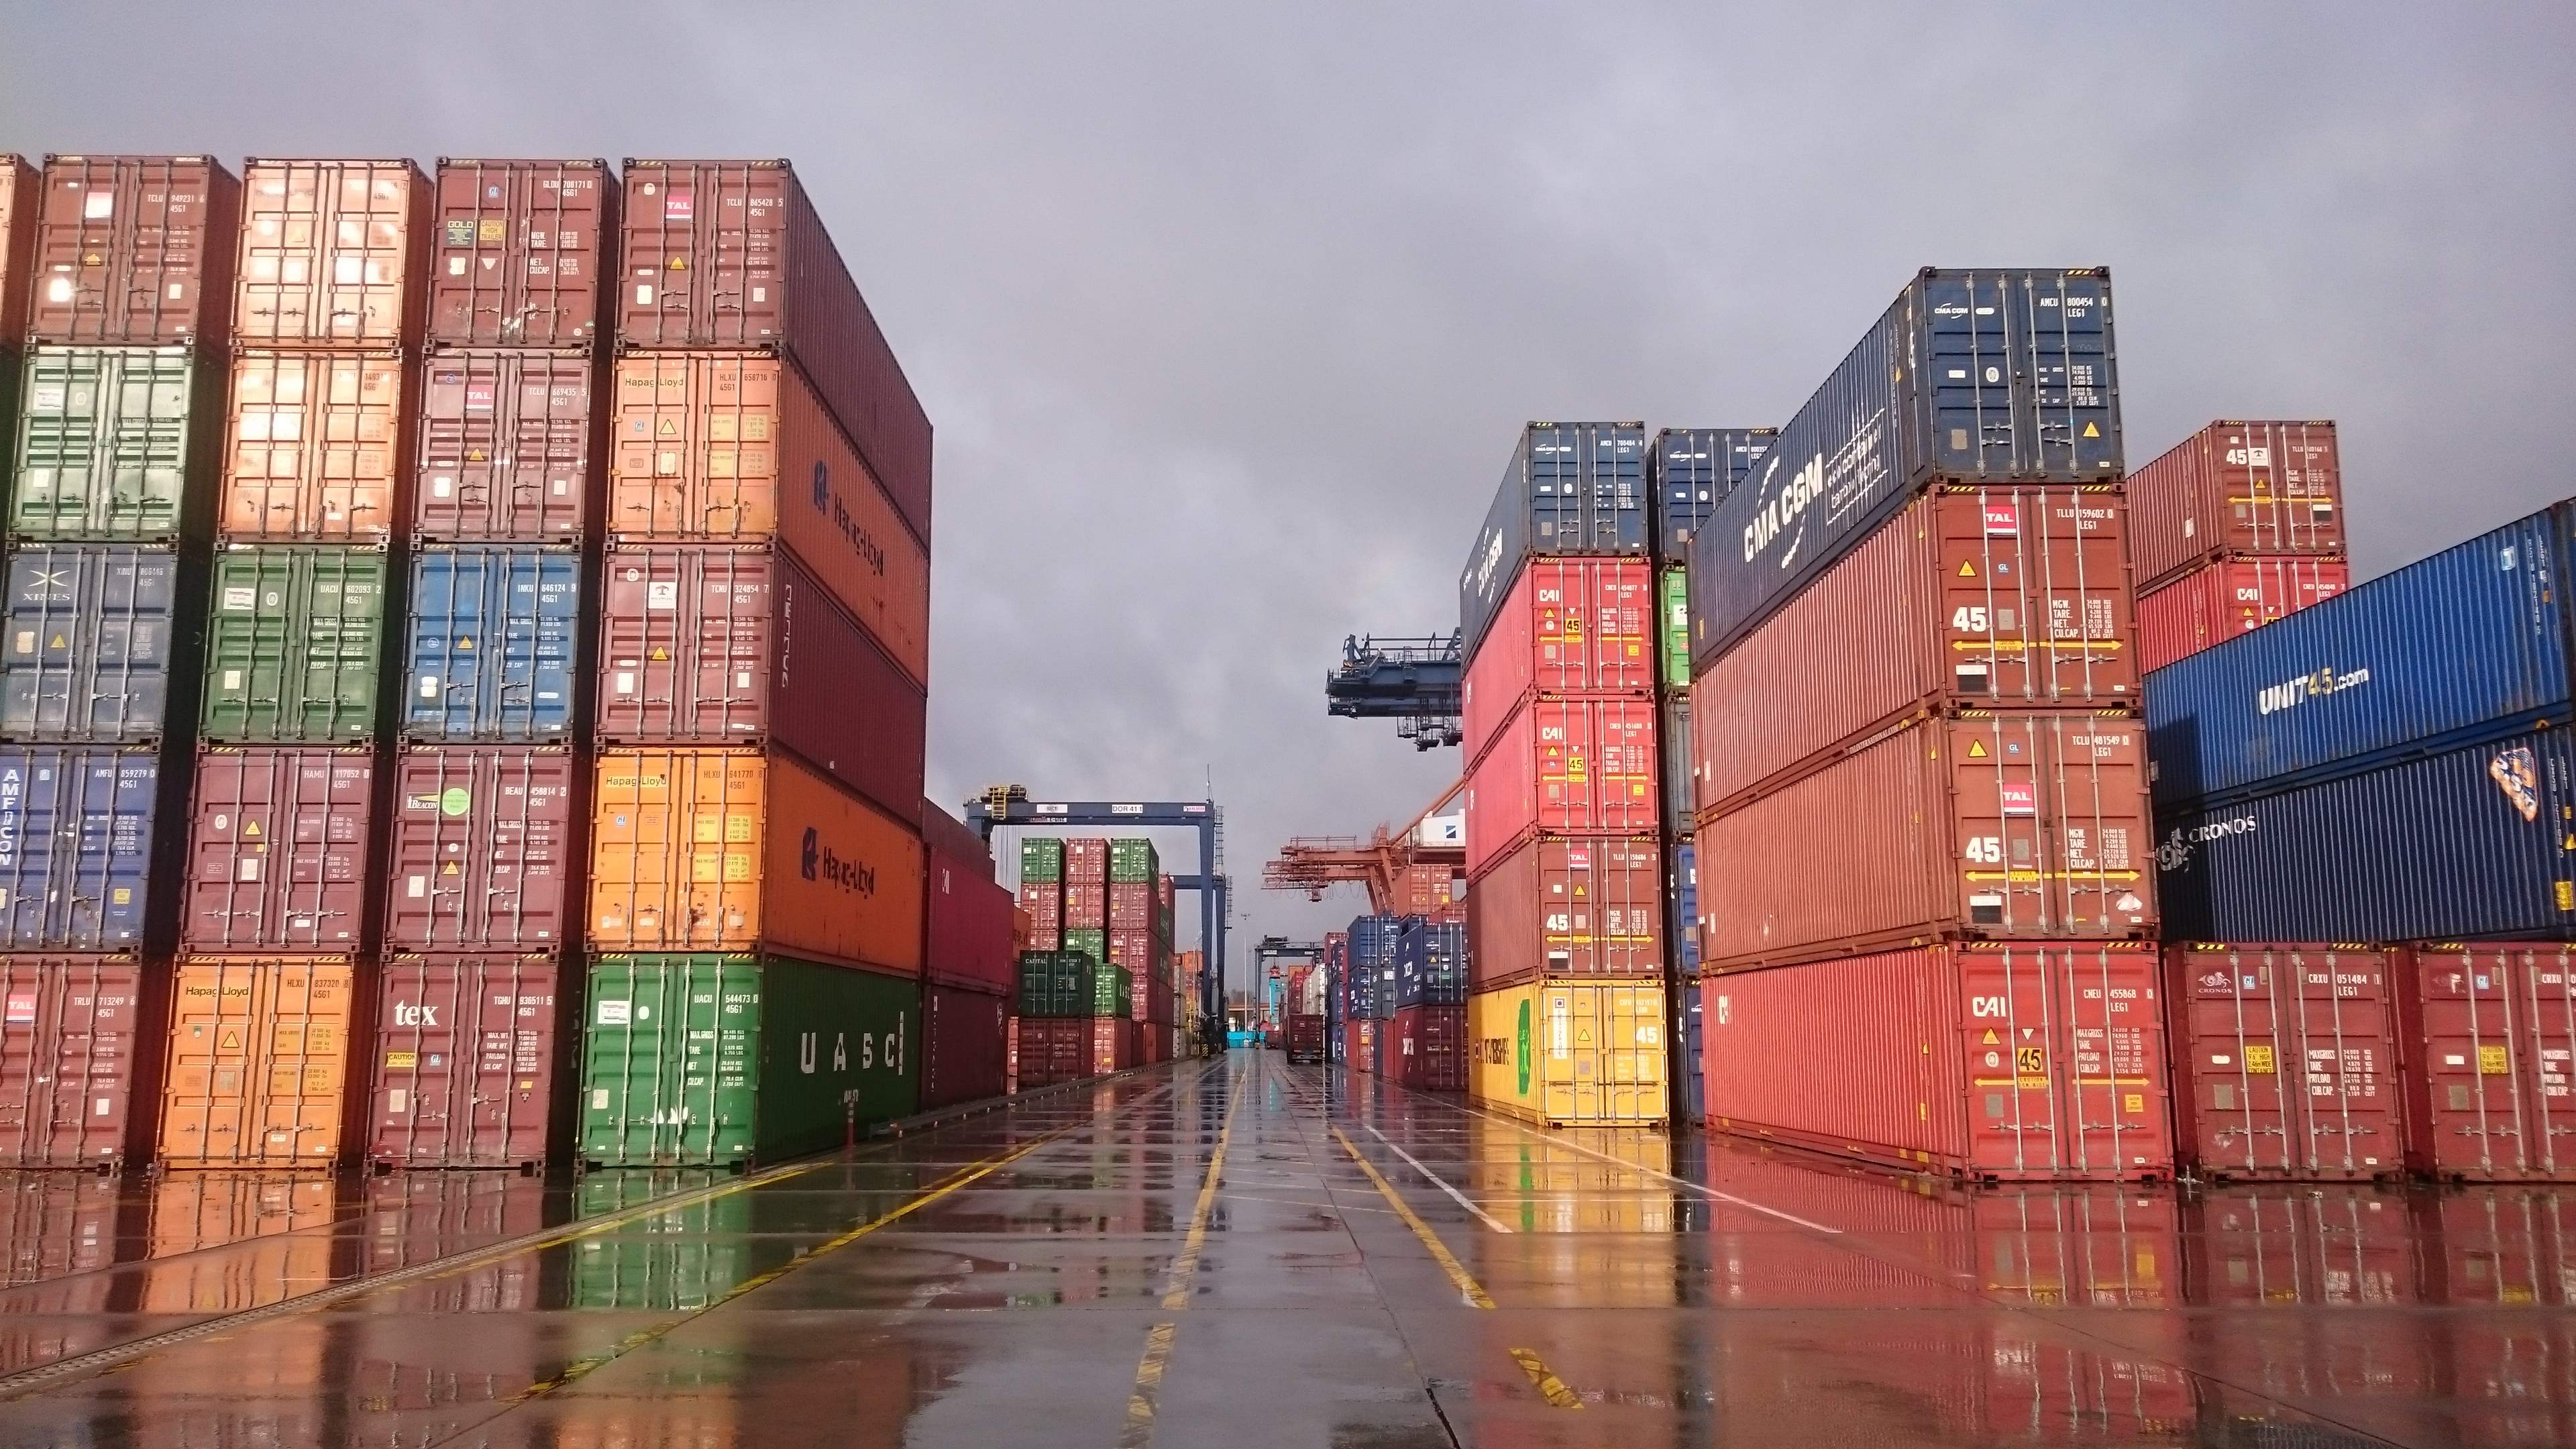 transgraniczne przemieszczanie odpadów międzynarodowe przemieszczanie odpadów terminal kontenerowy wywóz odpadów z Polski eksport odpadów import odpadów SENT BDO tranzyt